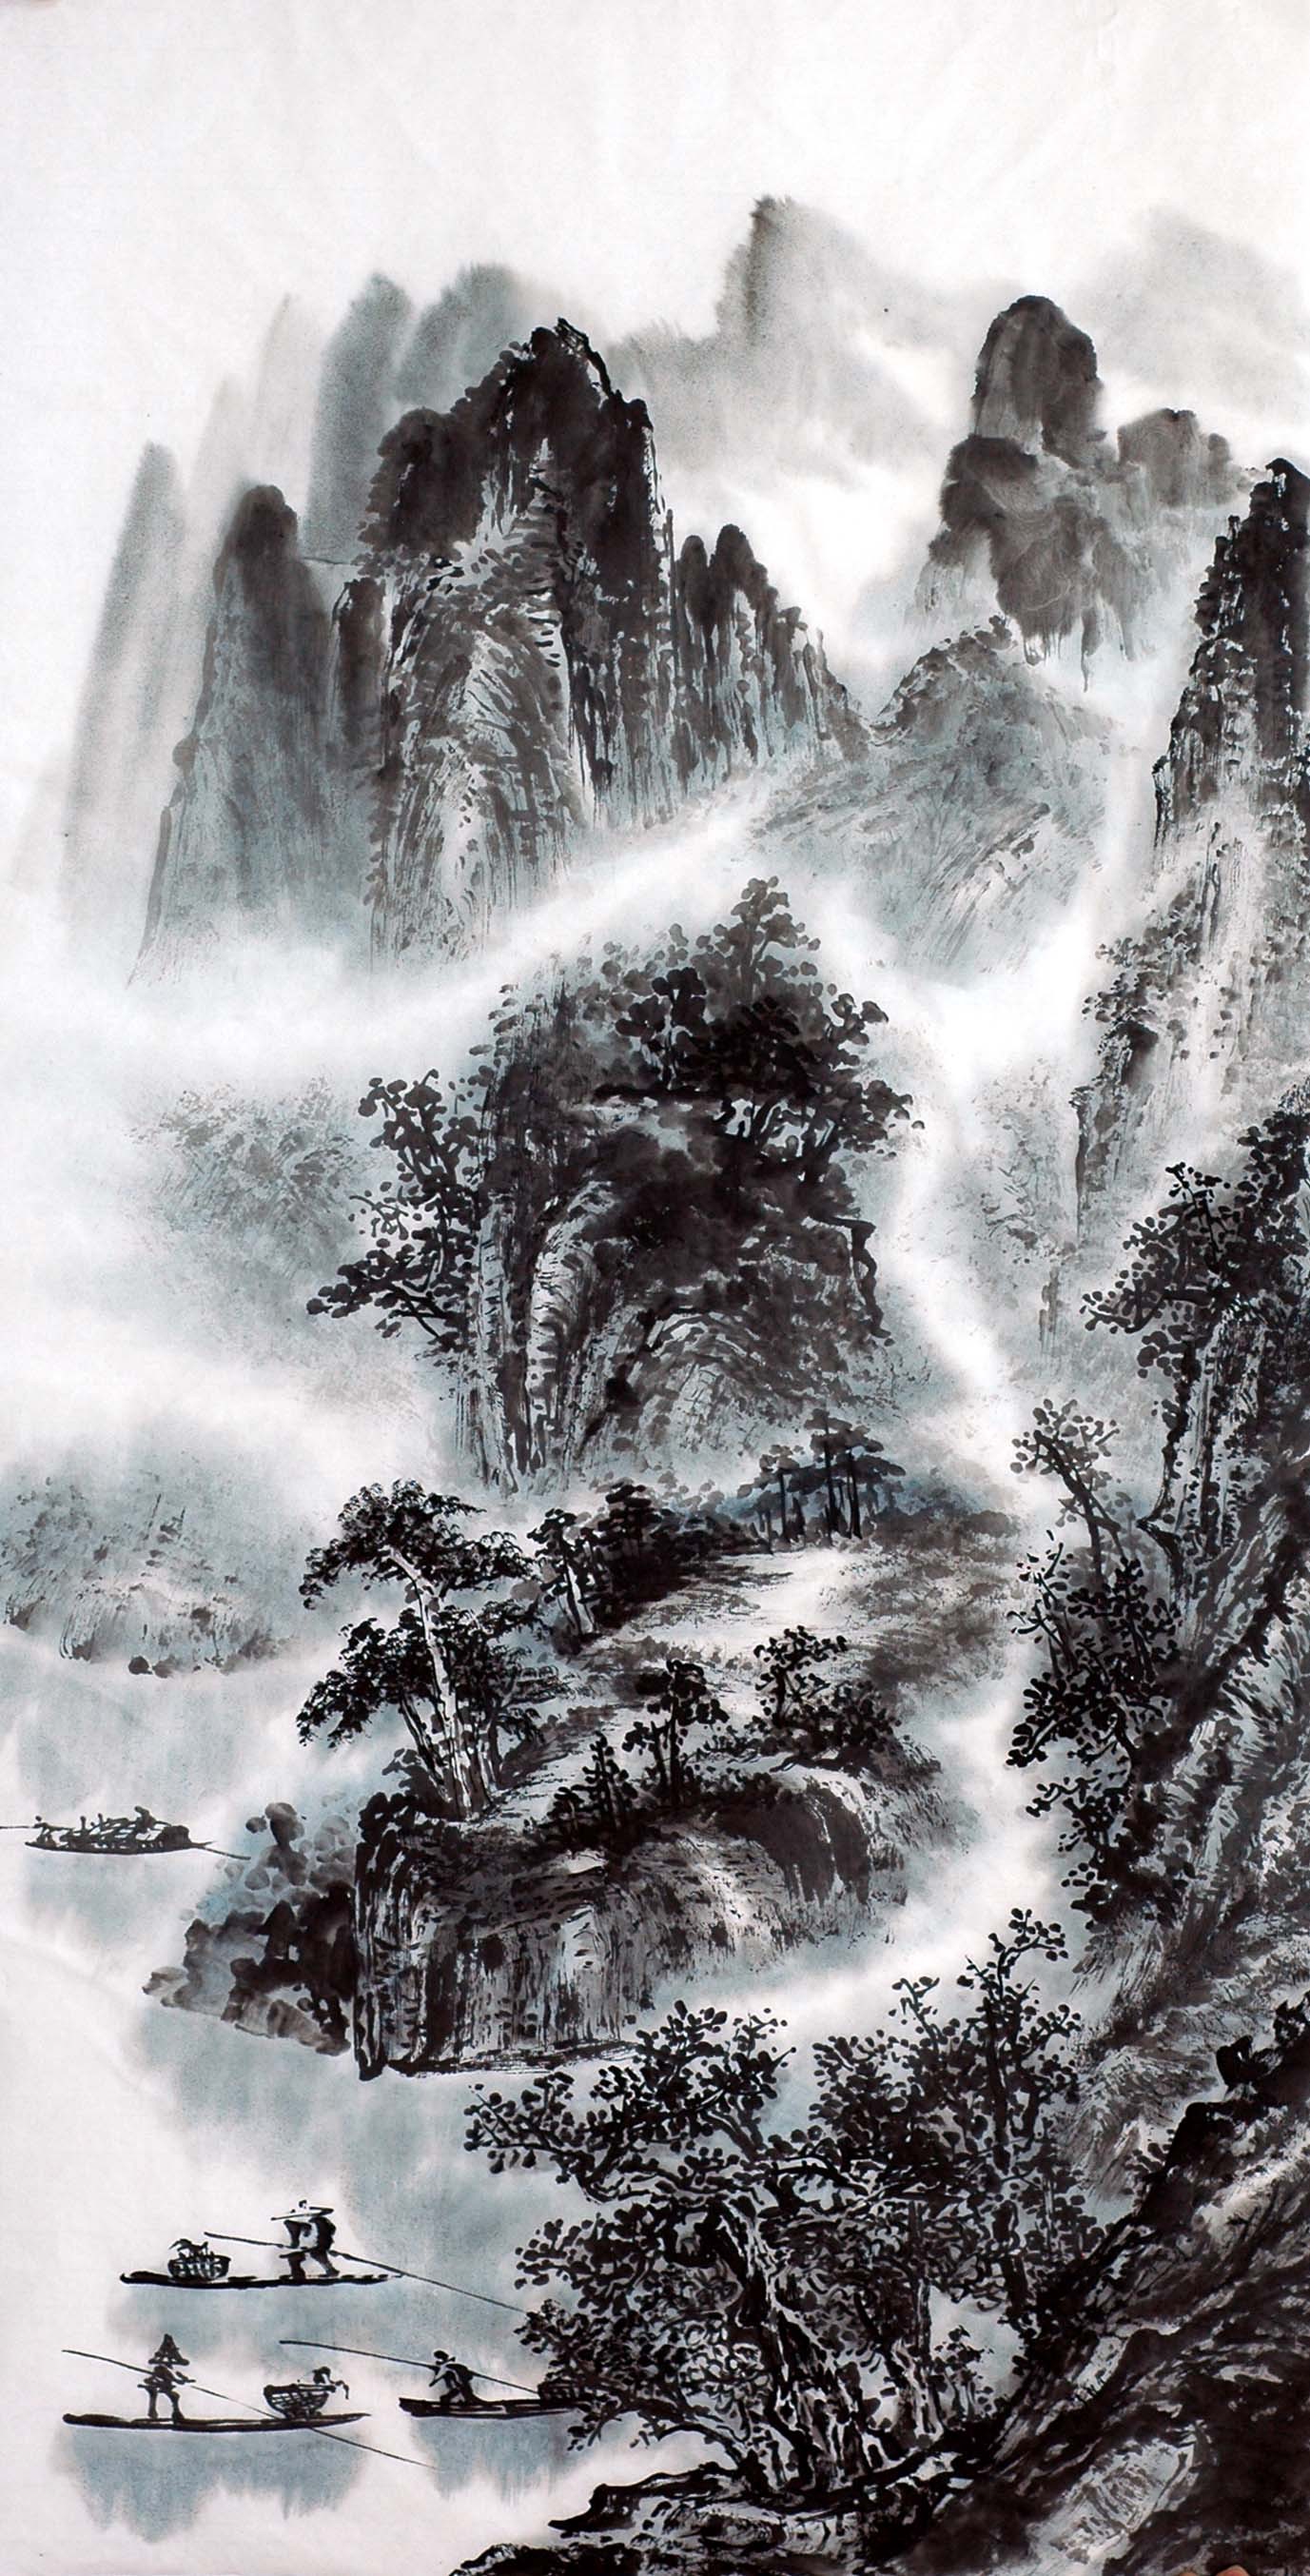 Chinese Landscape Painting - CNAG012750